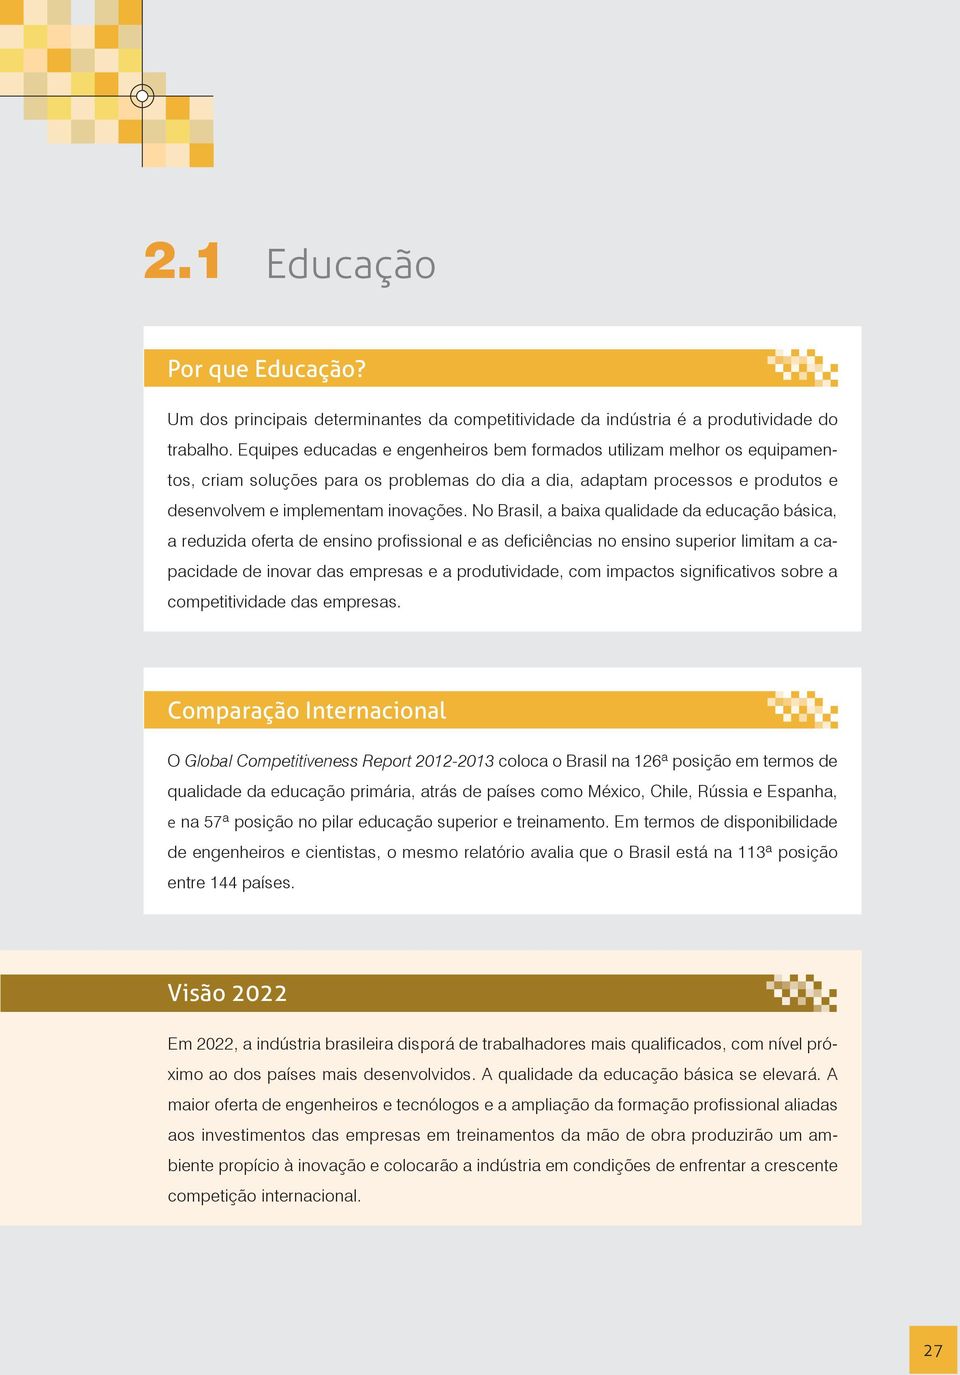 No Brasil, a baixa qualidade da educação básica, a reduzida oferta de ensino profissional e as deficiências no ensino superior limitam a capacidade de inovar das empresas e a produtividade, com